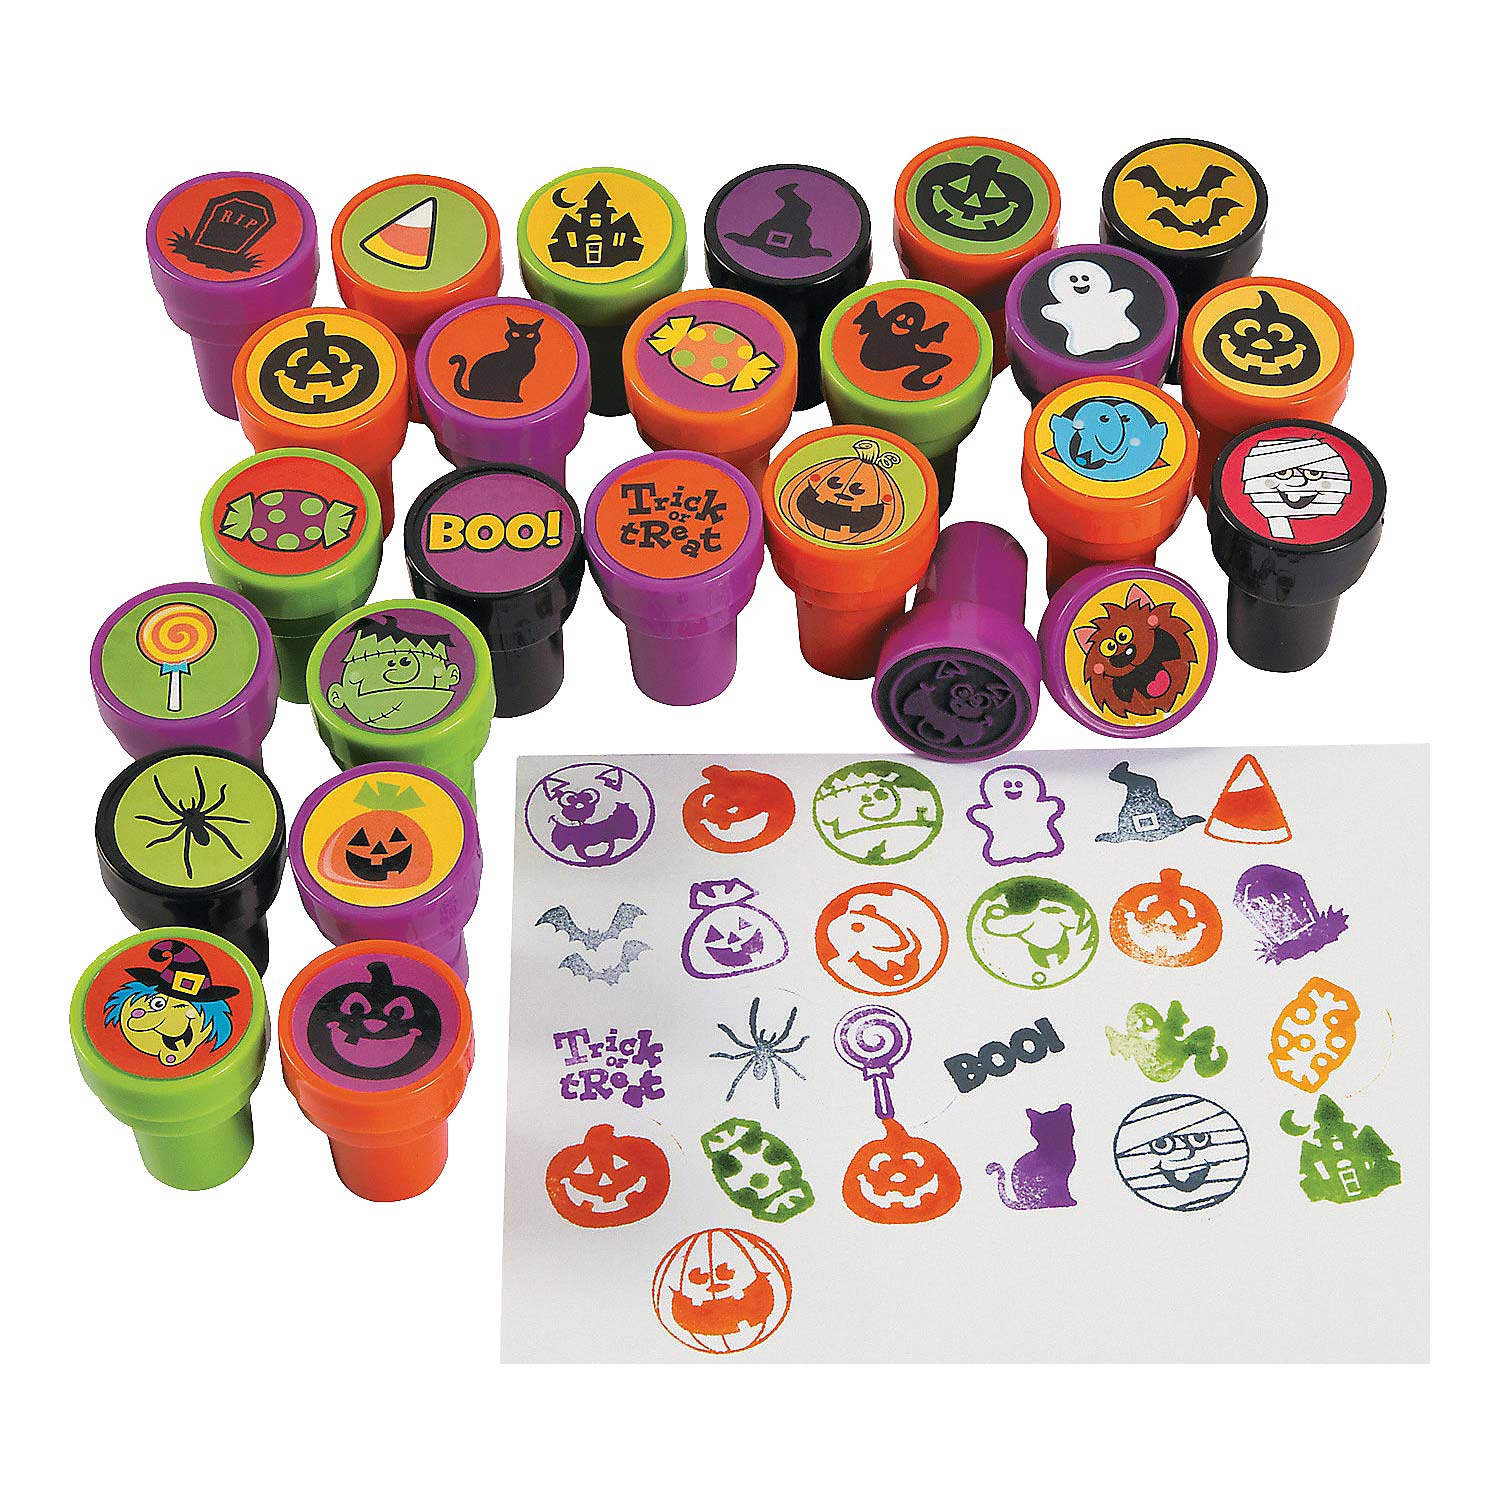 Emoji Assorted Stampers for Kids - 50 Pcs